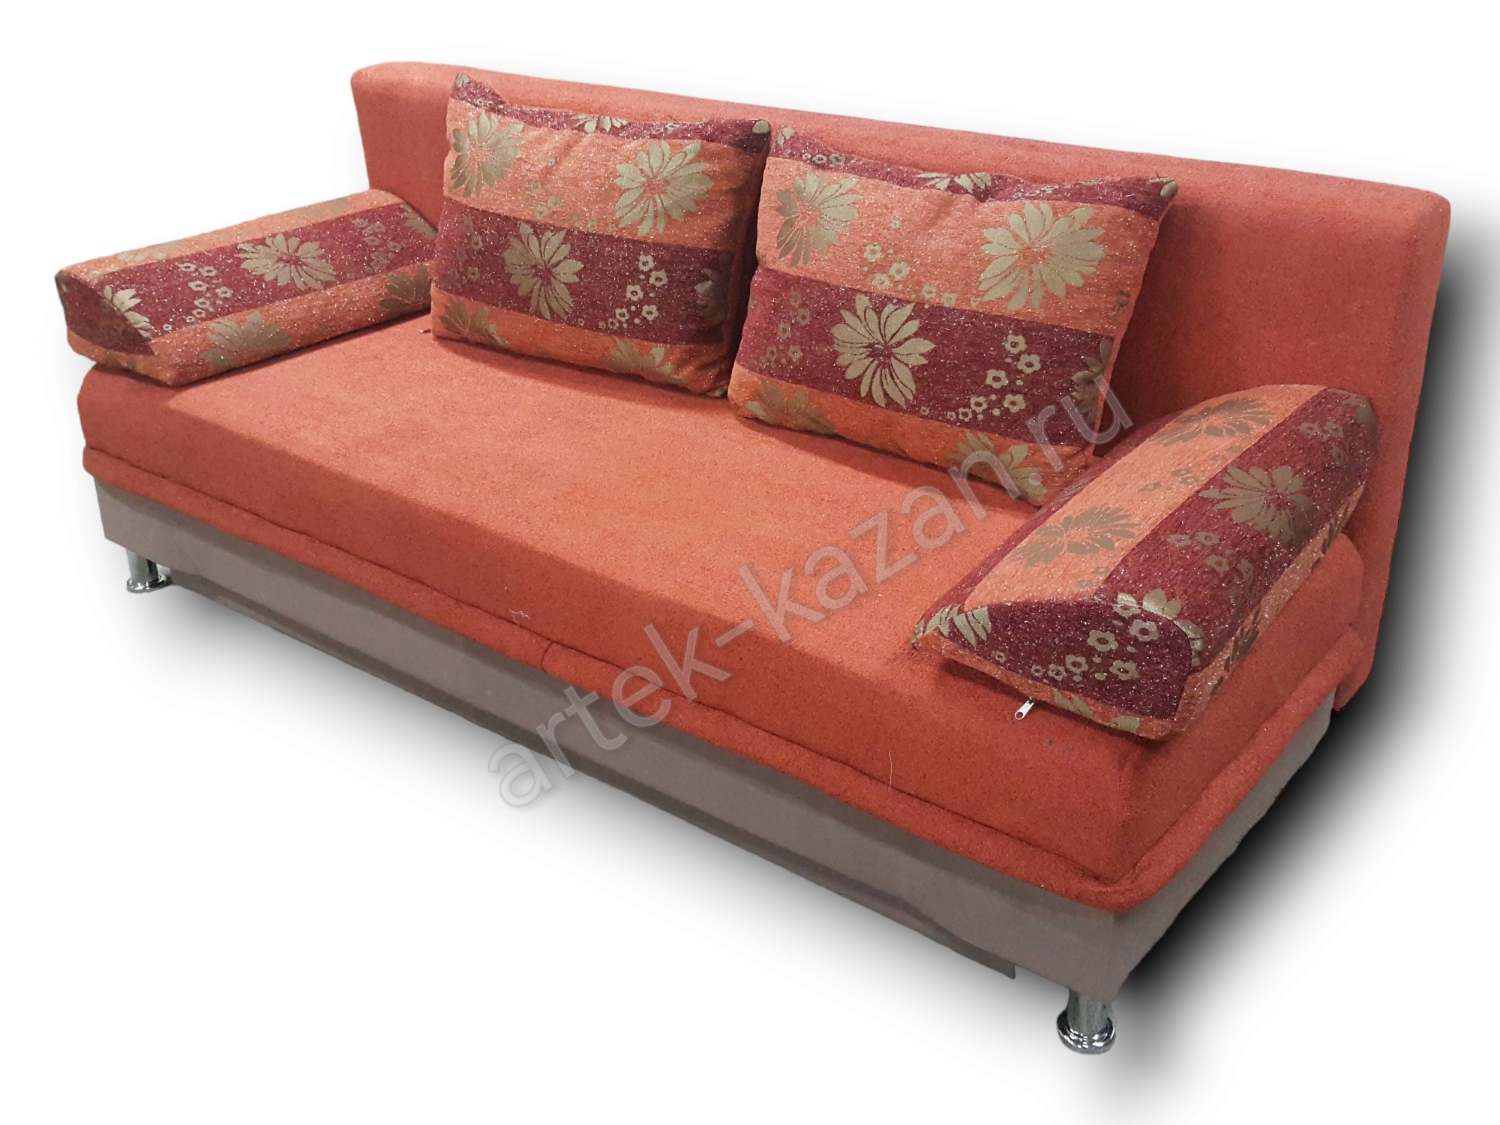 диван еврокнижка Эконом фото № 55. Купить недорогой диван по низкой цене от производителя можно у нас.